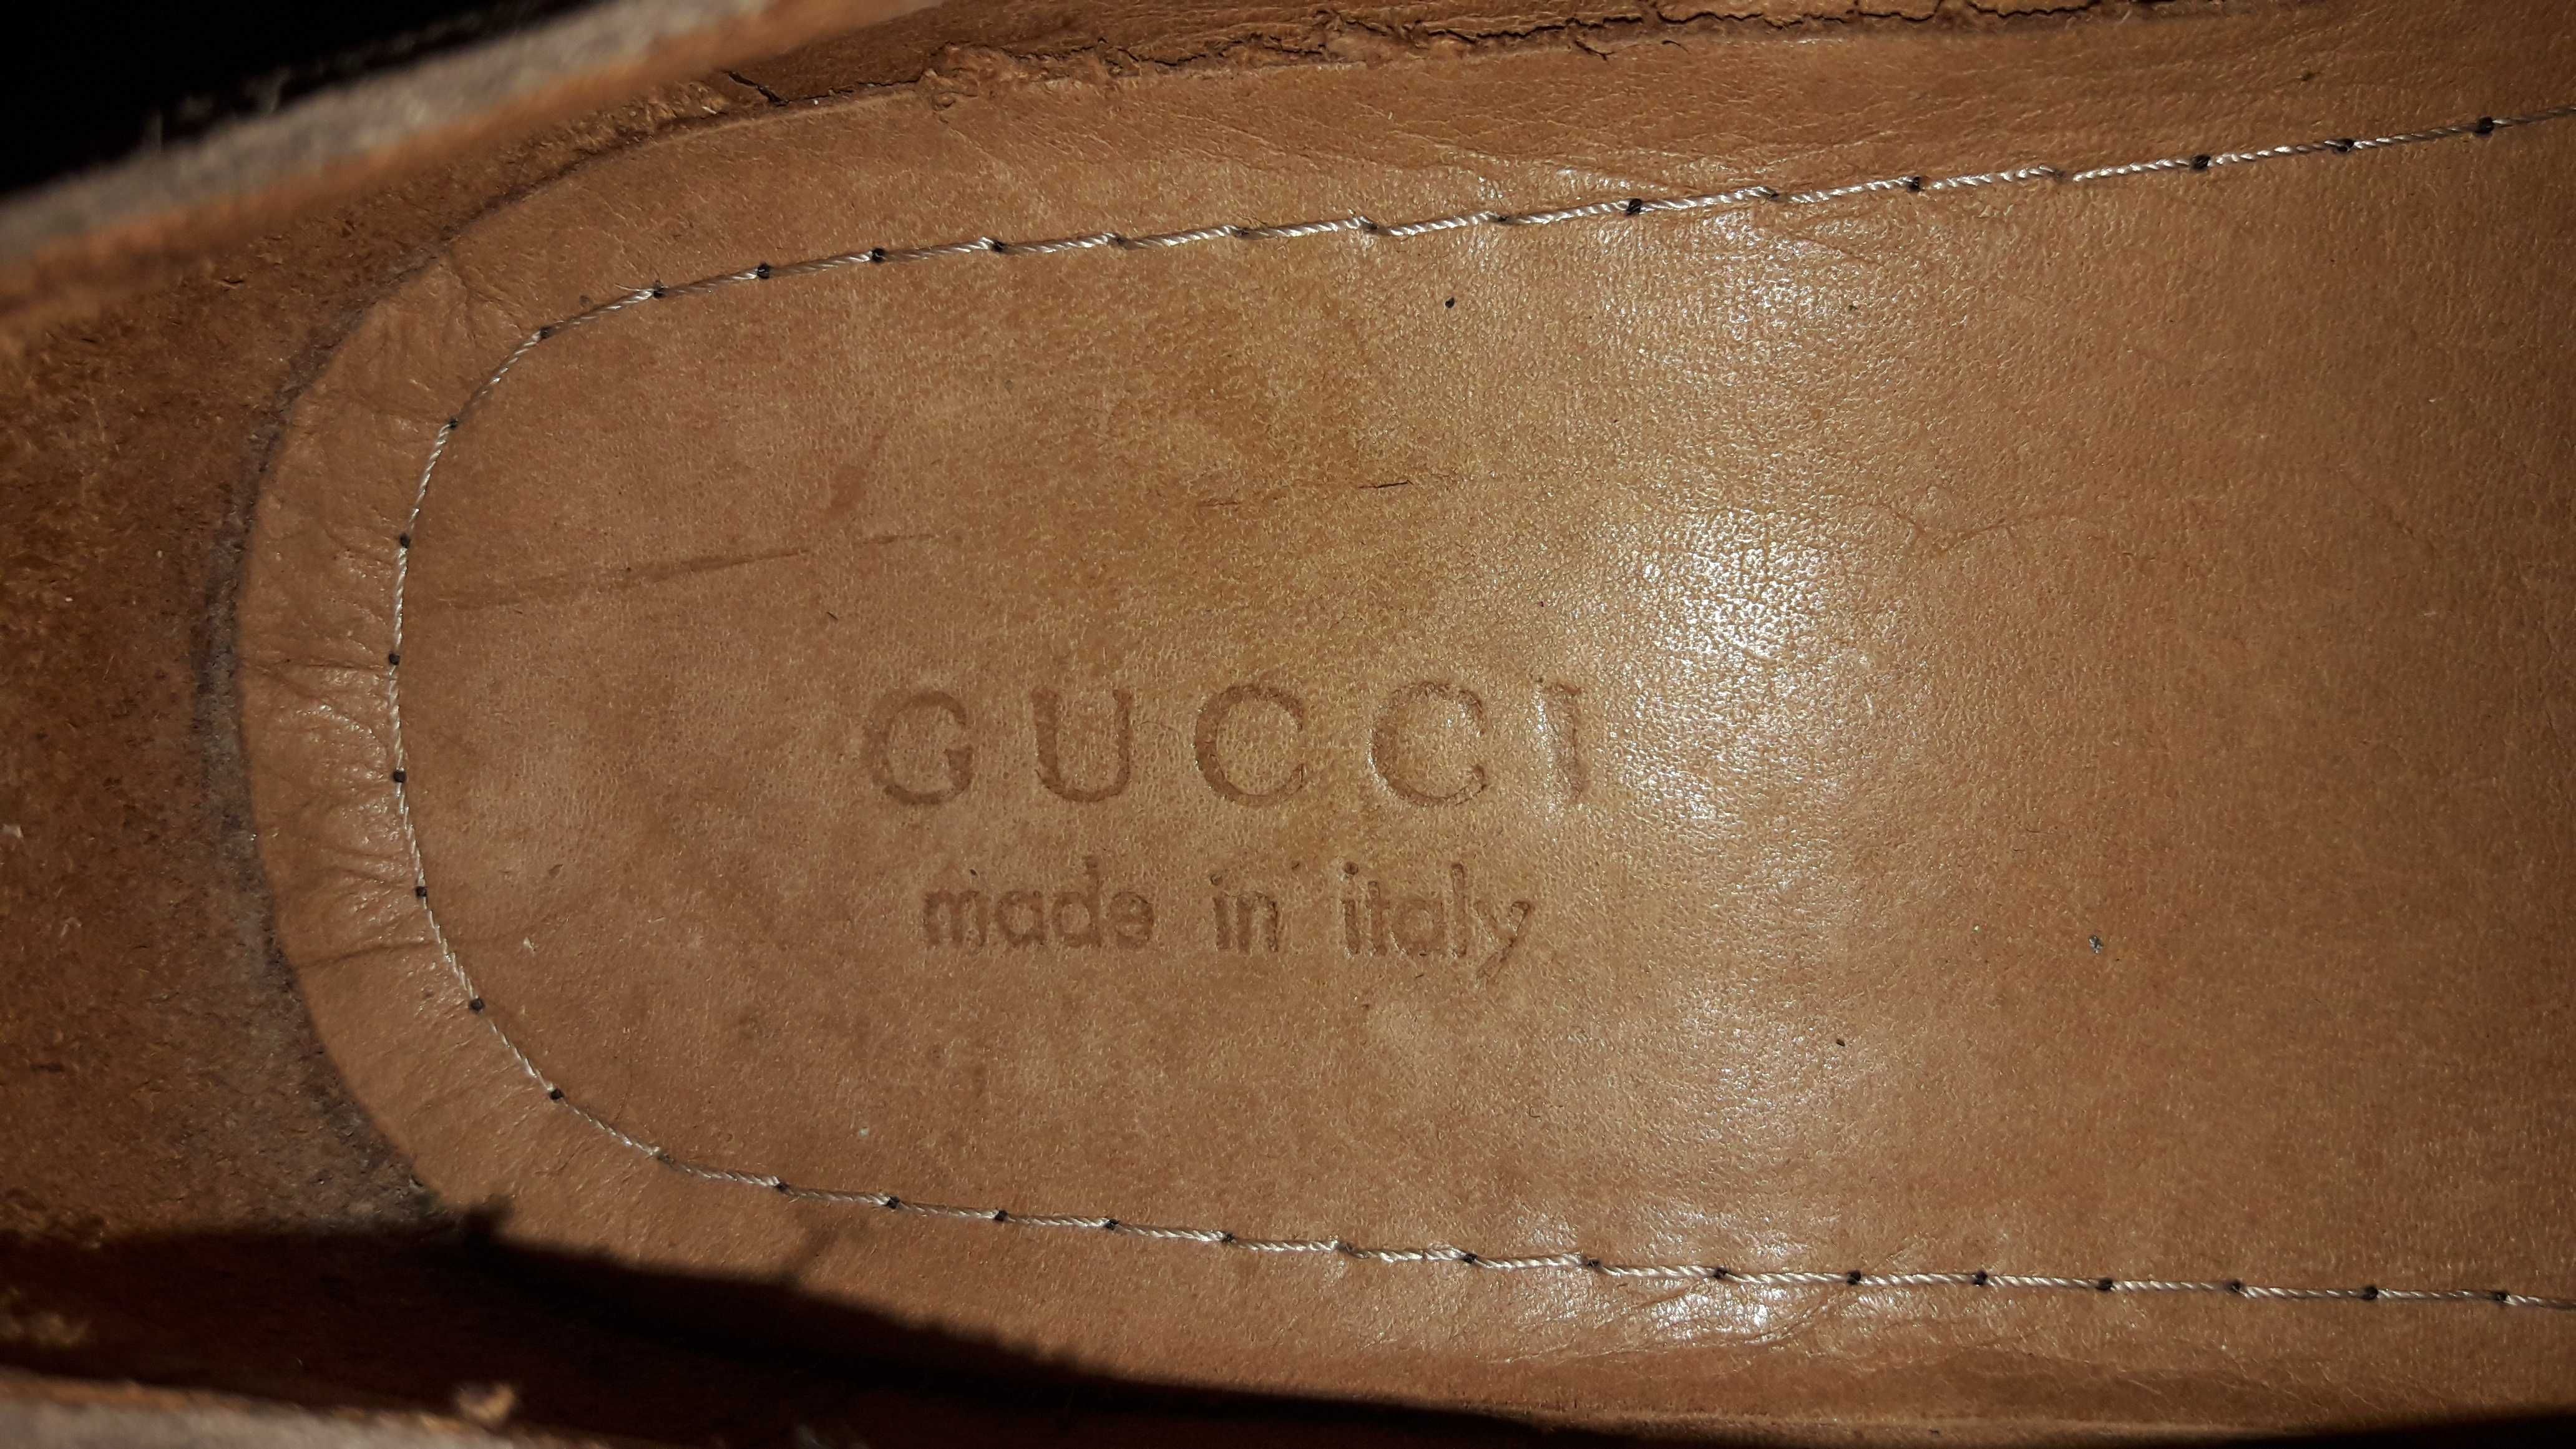 Туфли Gucci Италия статуные в оригинале акомфорт кроссовок мокасин кед